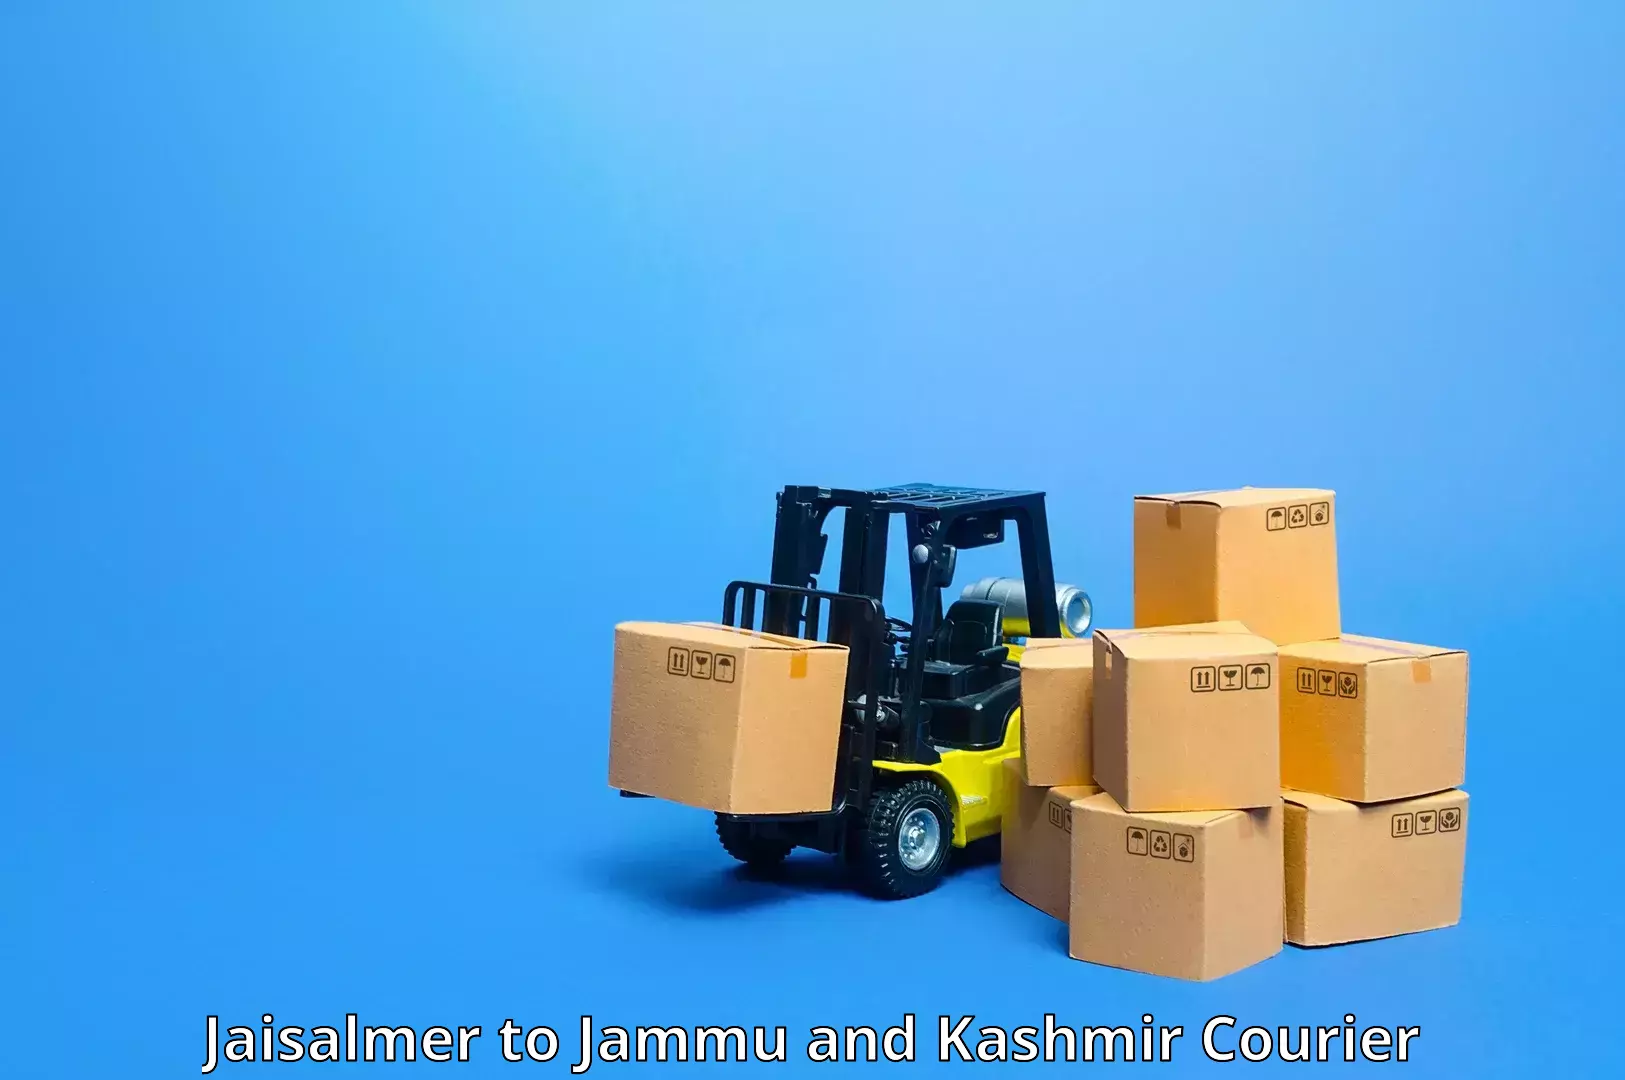 Customized shipping options Jaisalmer to Budgam